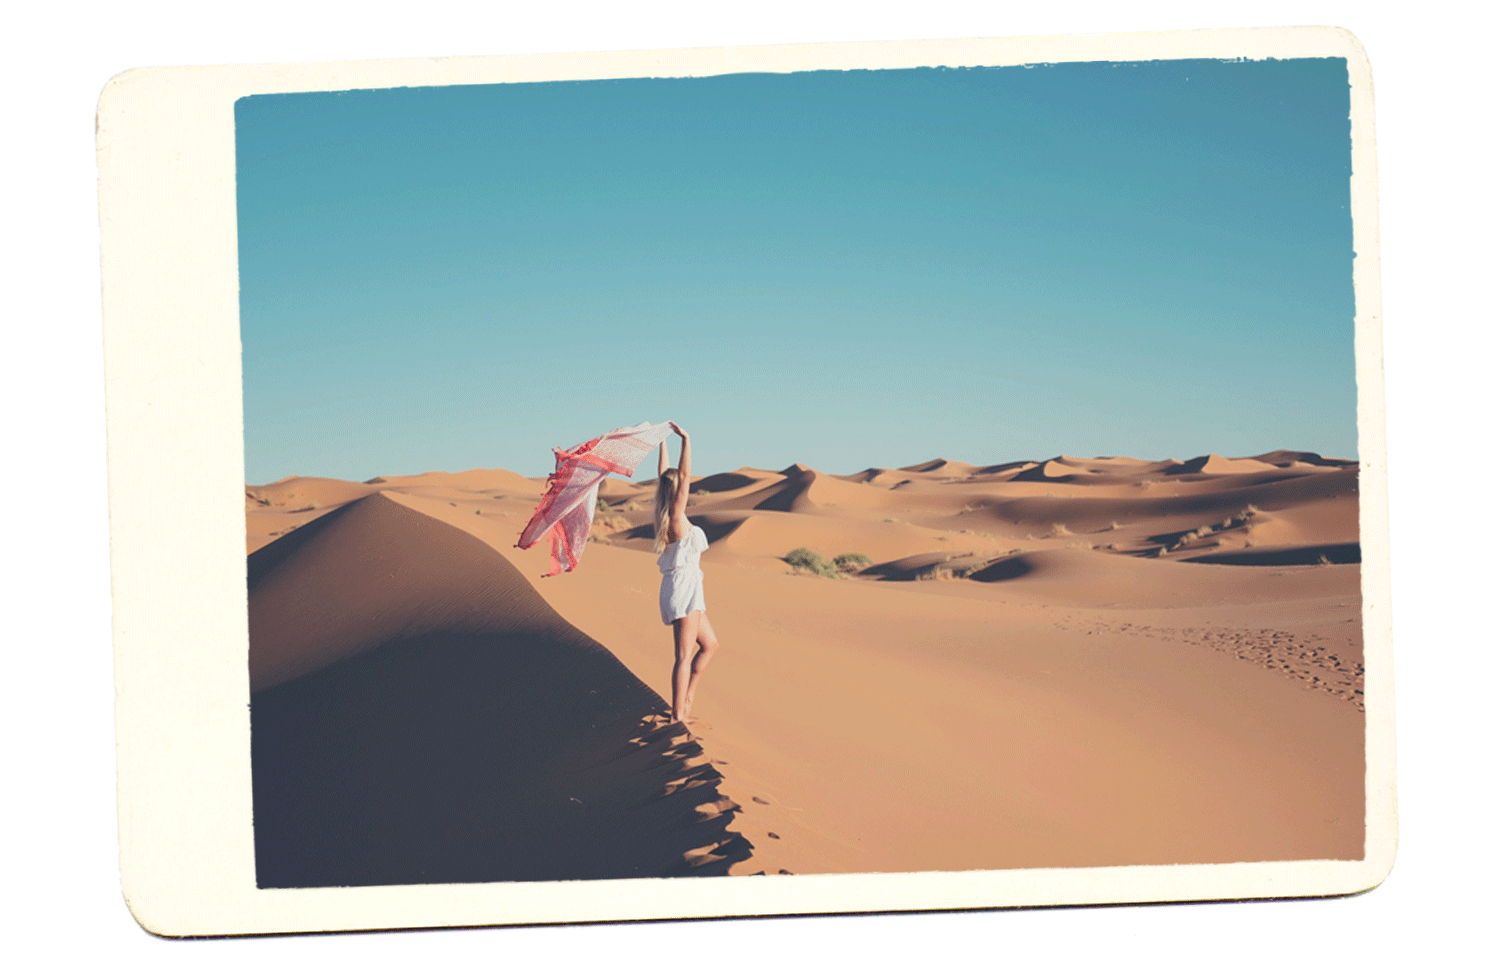 sahara desert in morocco